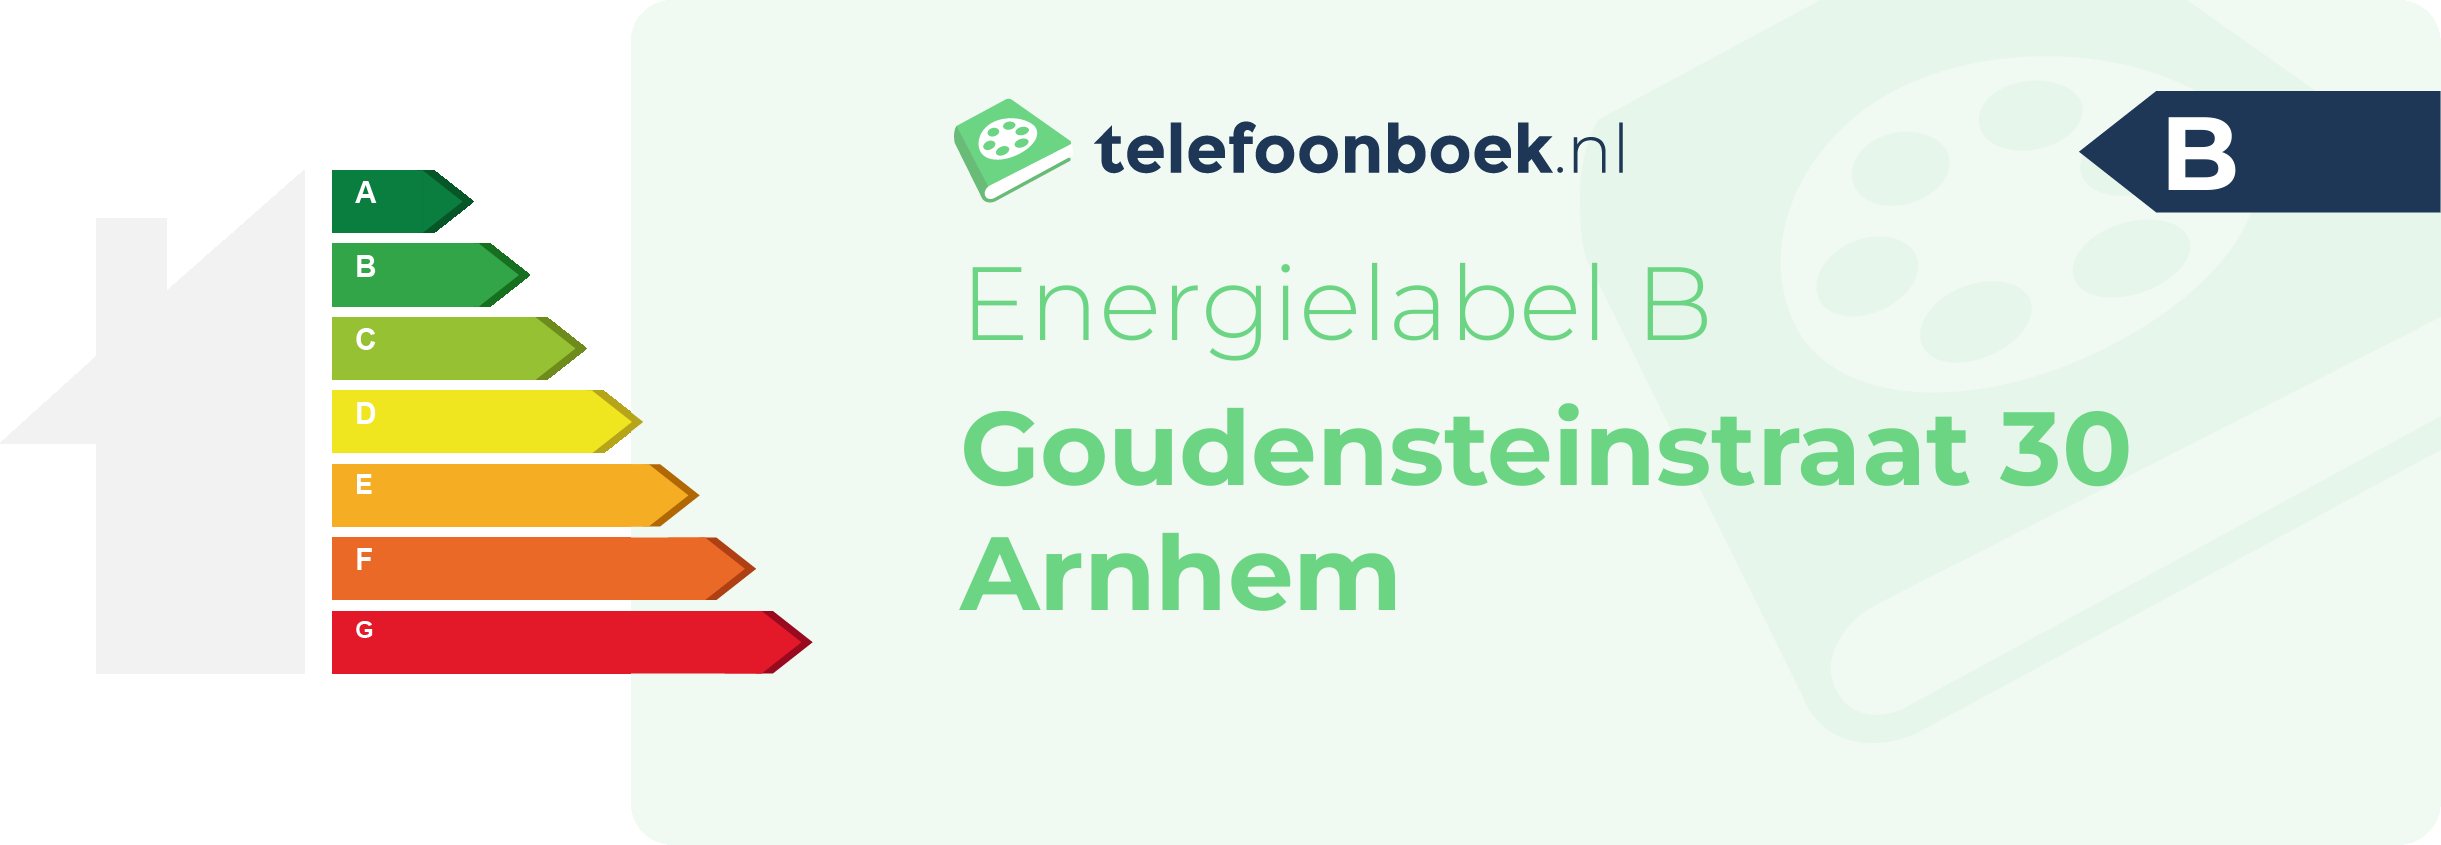 Energielabel Goudensteinstraat 30 Arnhem